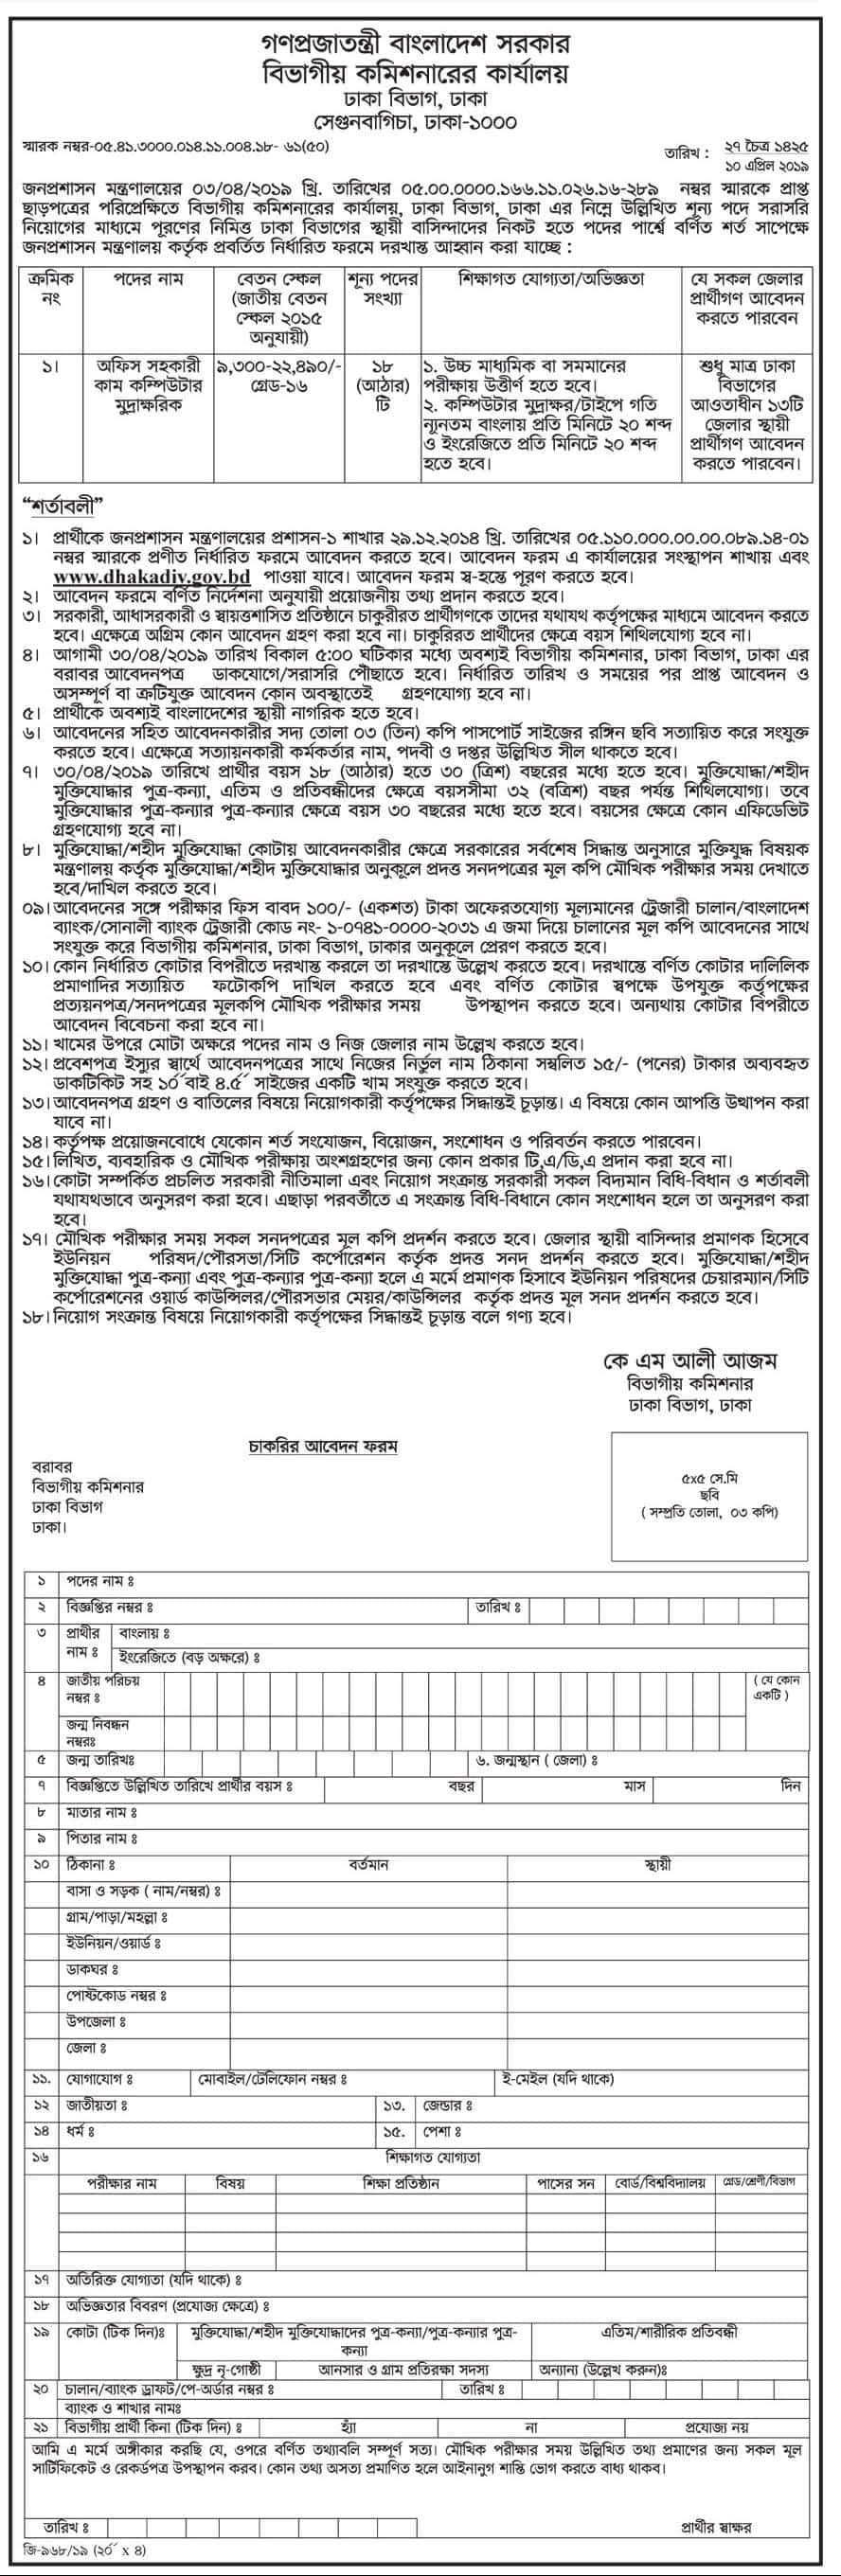 Income Tax Dhaka Division BD Govt Job Circular